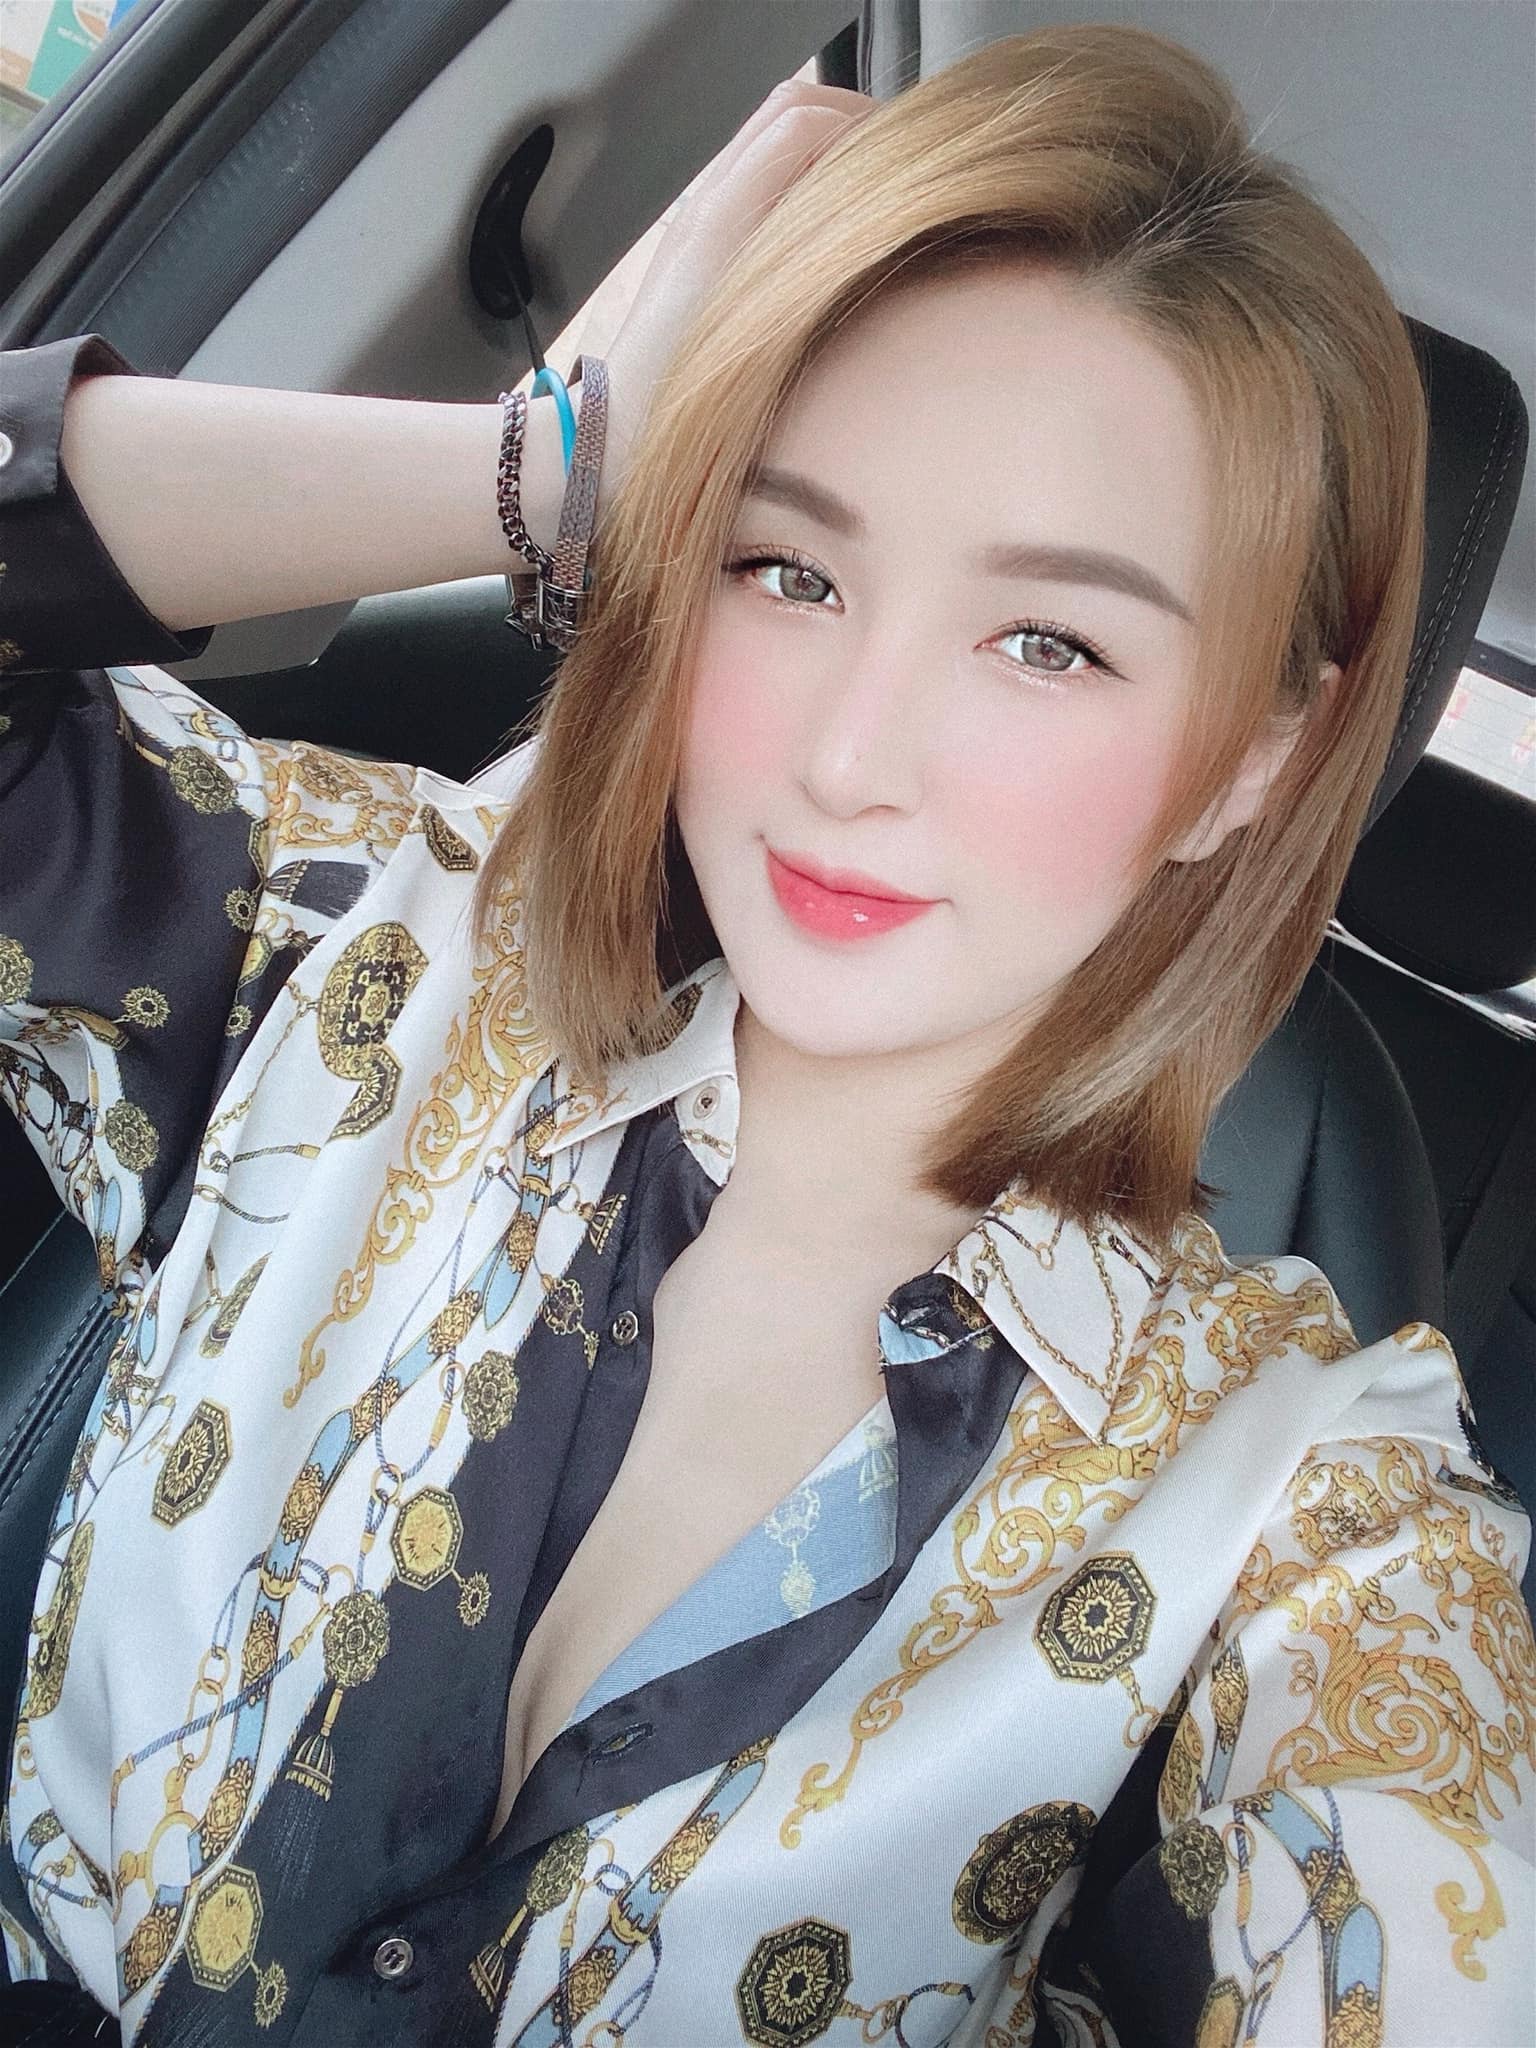 Minh Phương nữ giám đốc quyến rũ và xinh đẹp